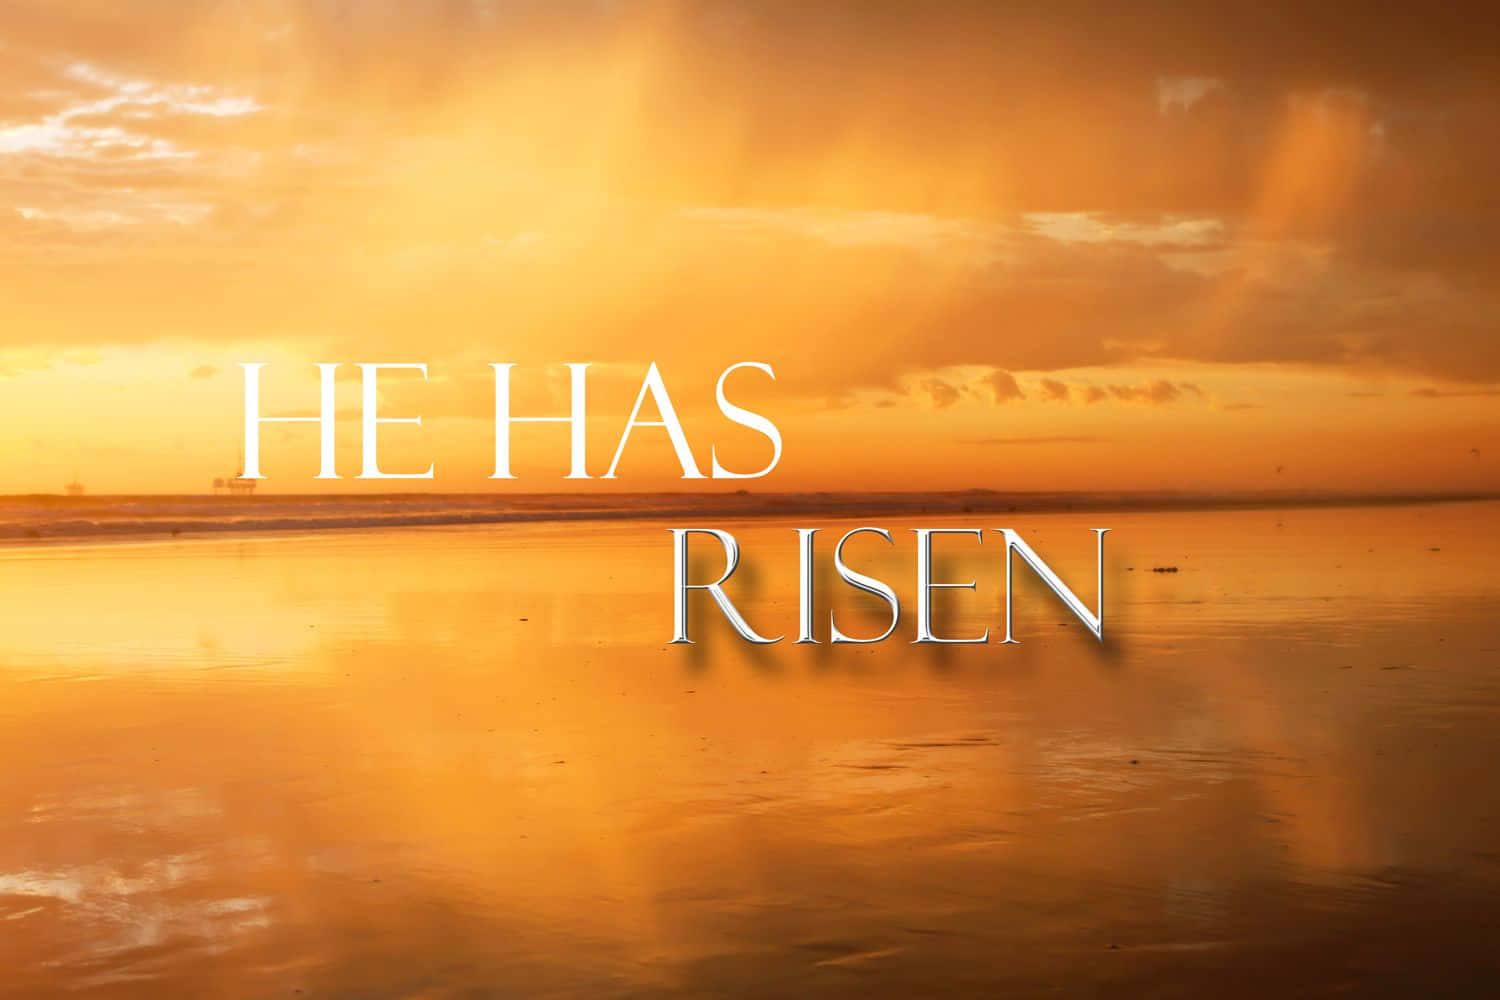 Christ er opstået - Glæd dig over Jesu opstandelse Wallpaper